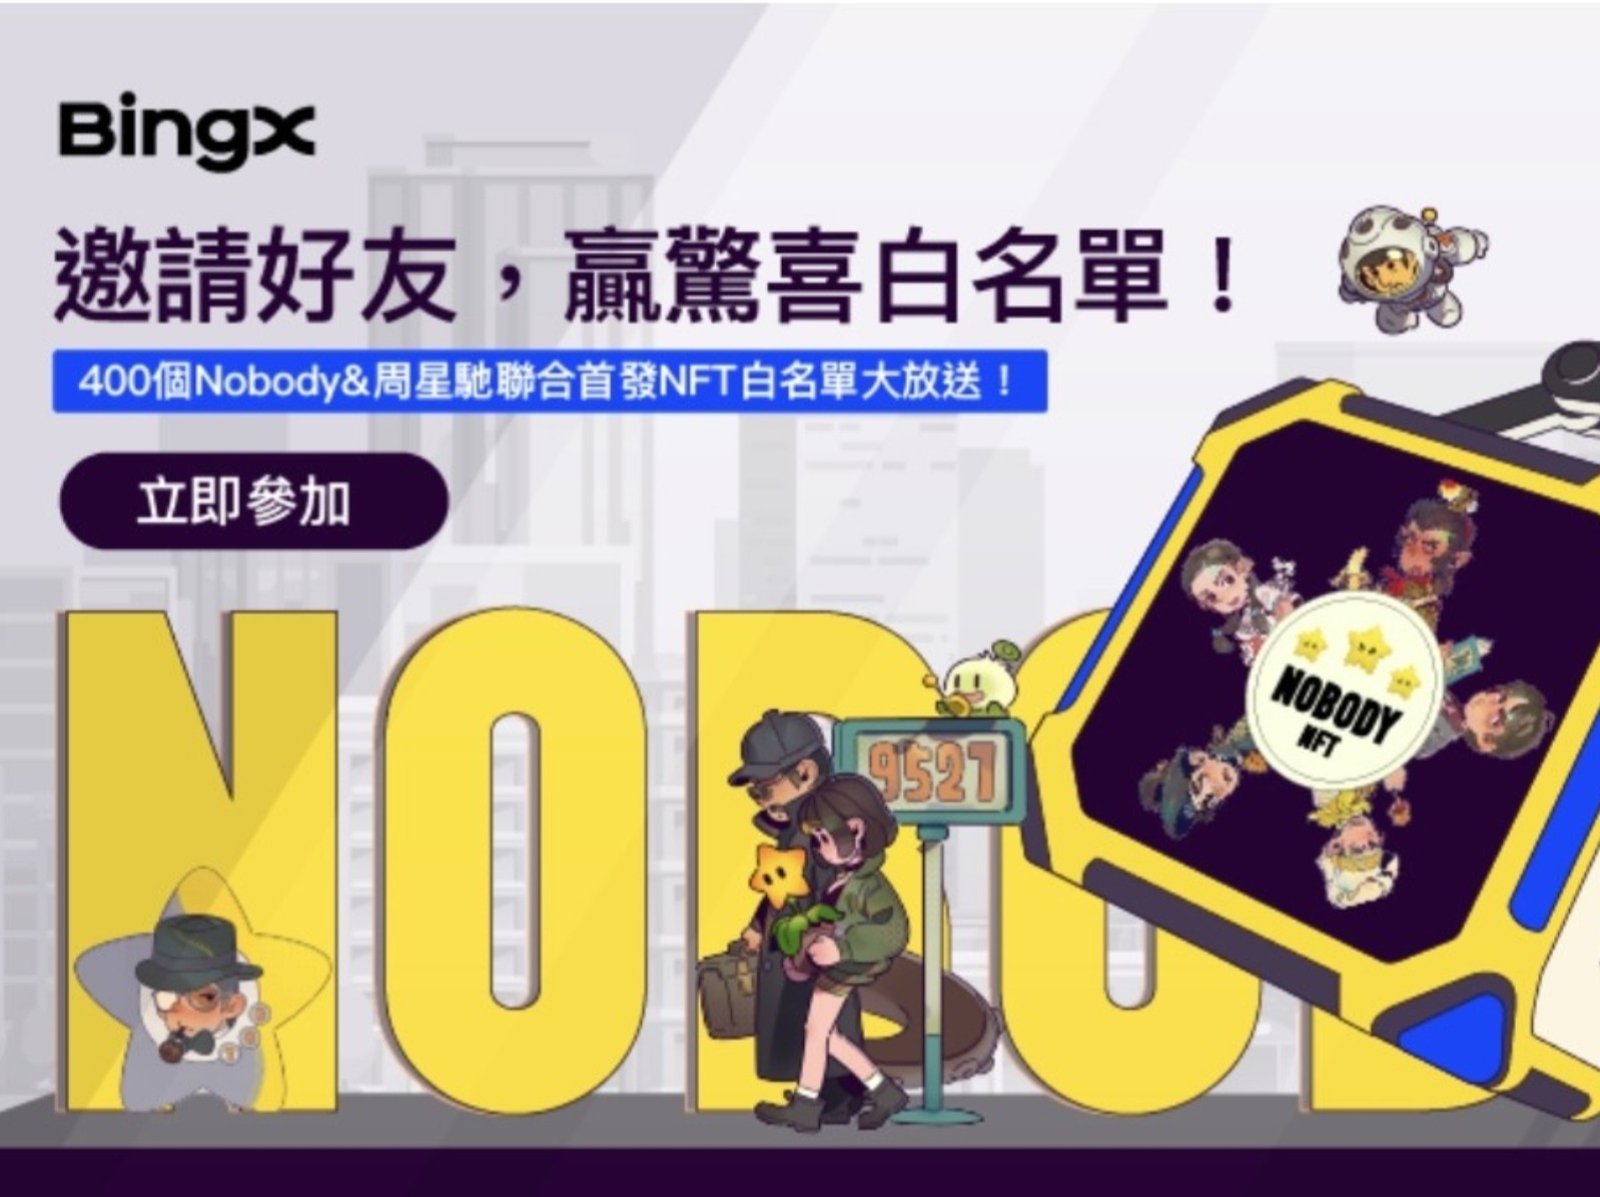 BingX 新春狂歡活動，400 個 Nobody & 周星馳聯合首發 NFT 白名單等你拿！